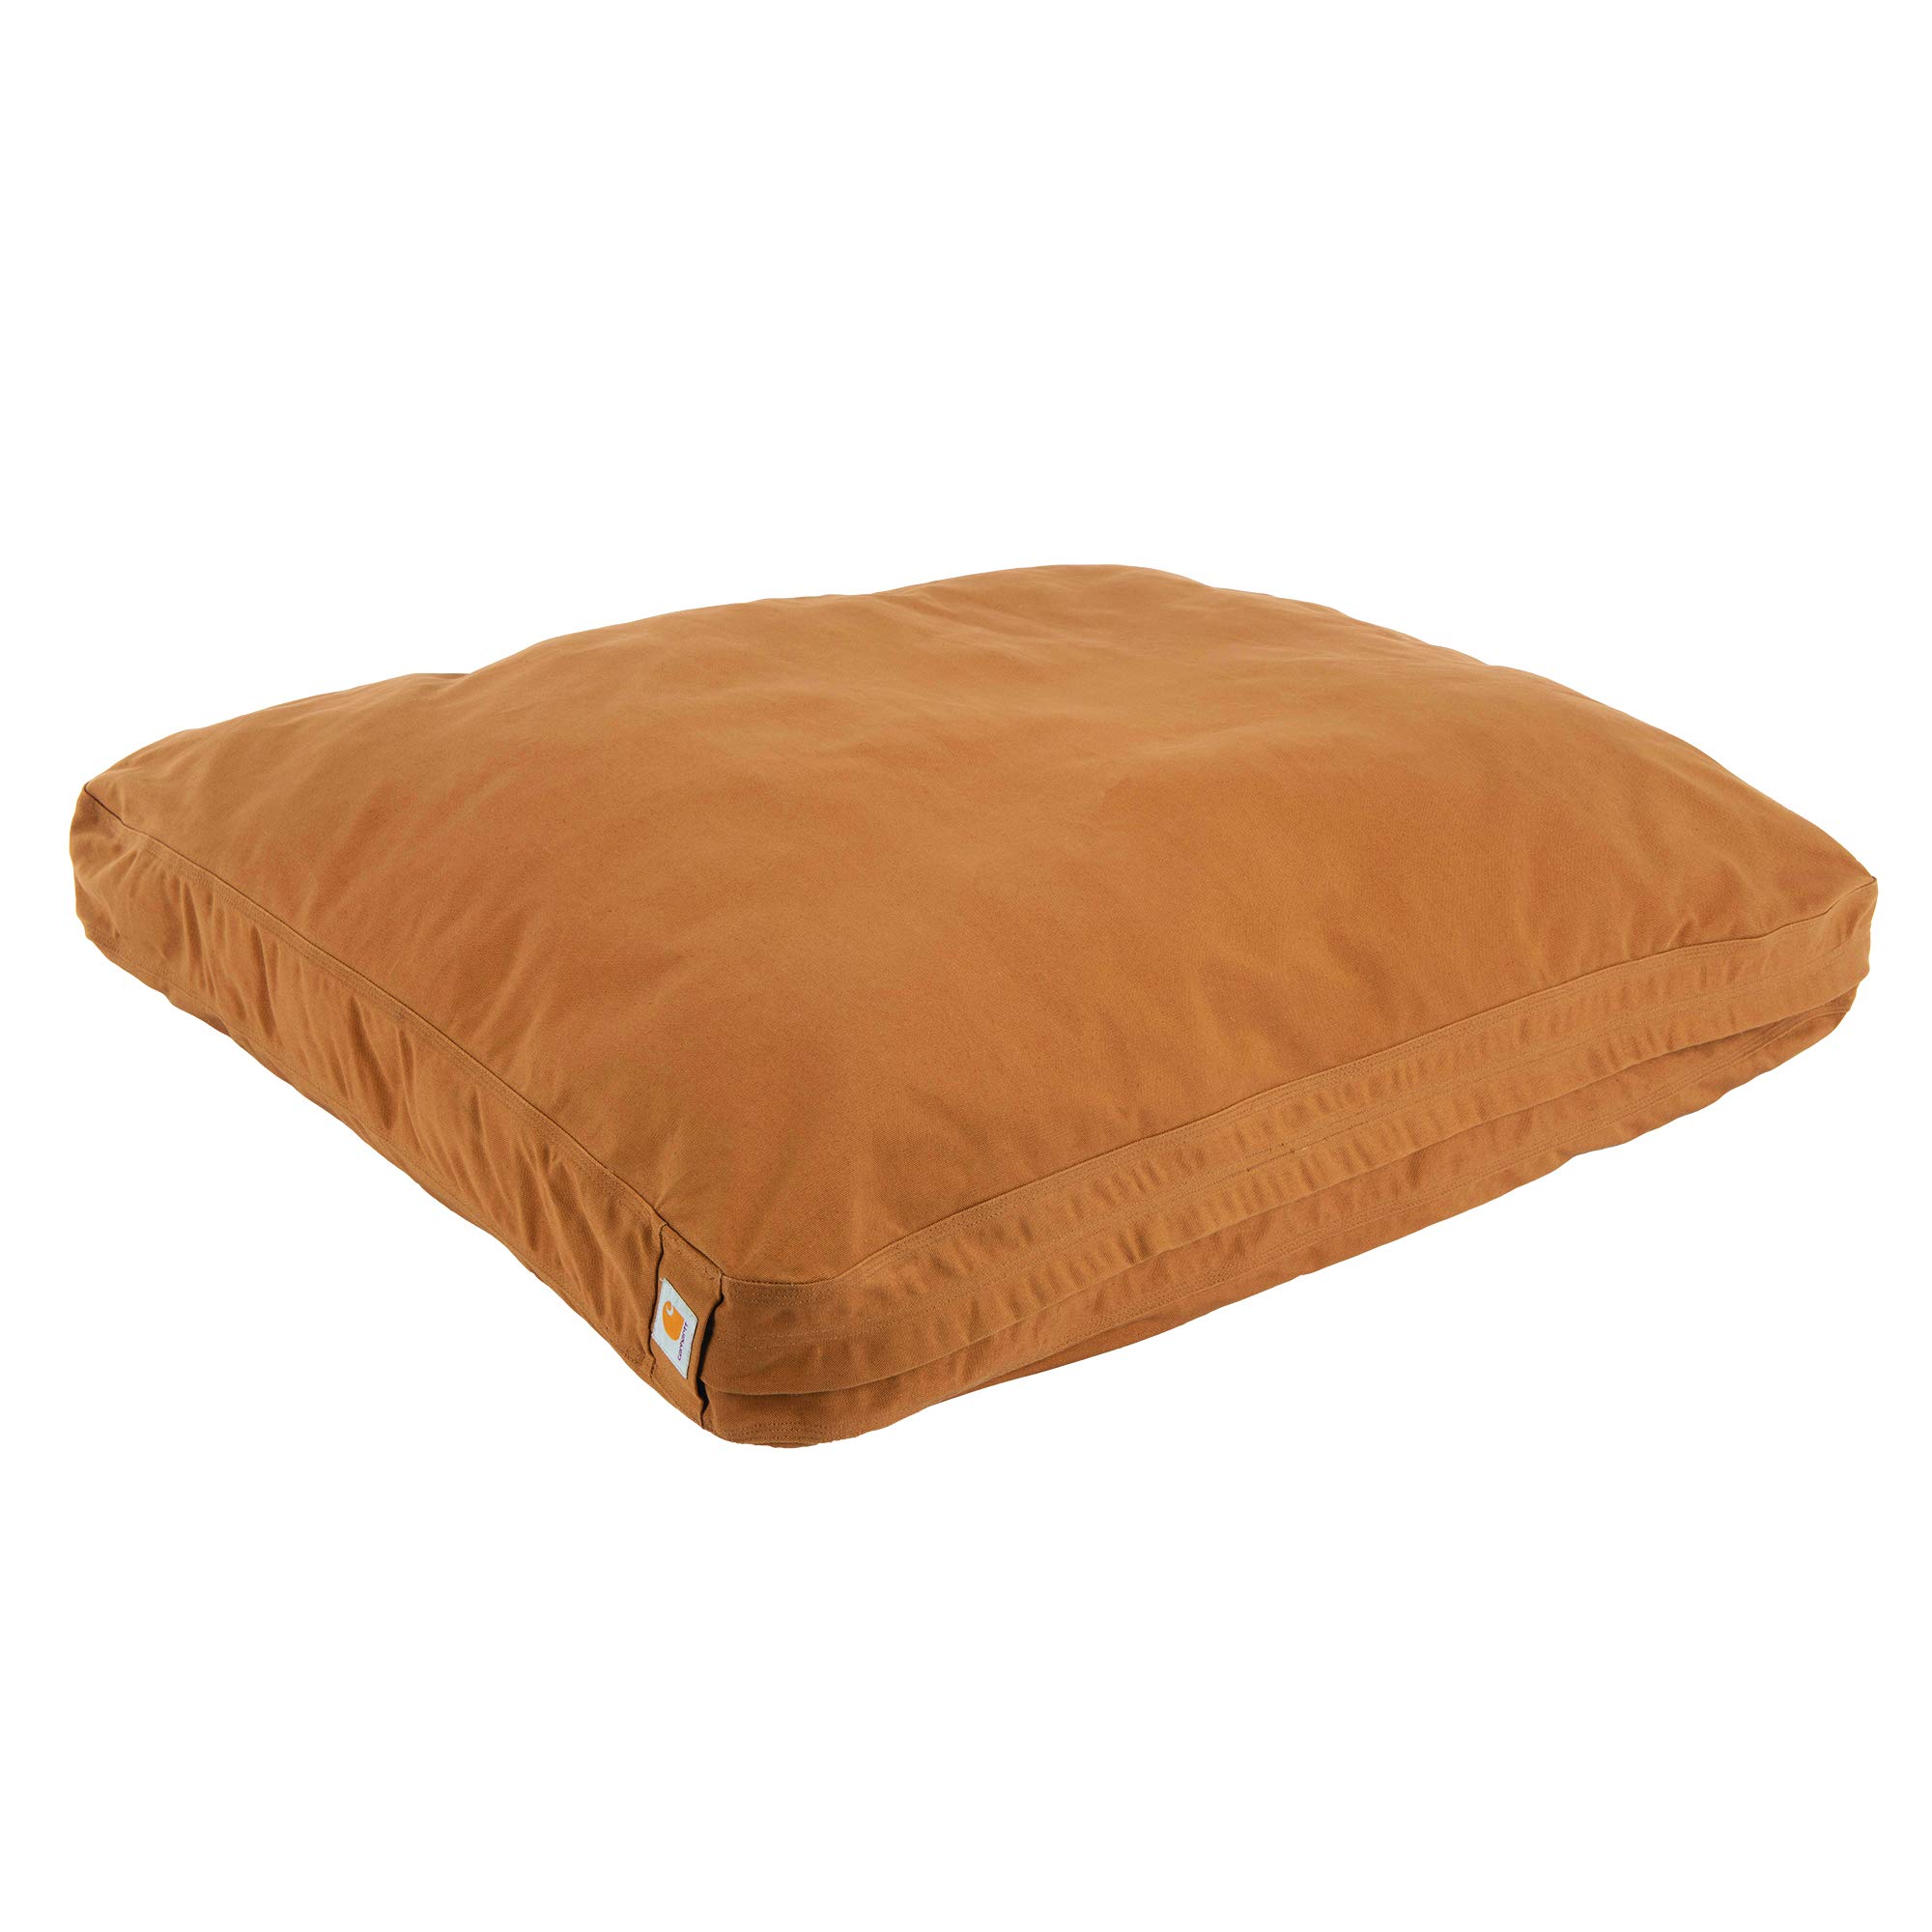 Carhartt Firm Duck Dog Bed Carhartt Brown, Medium $73